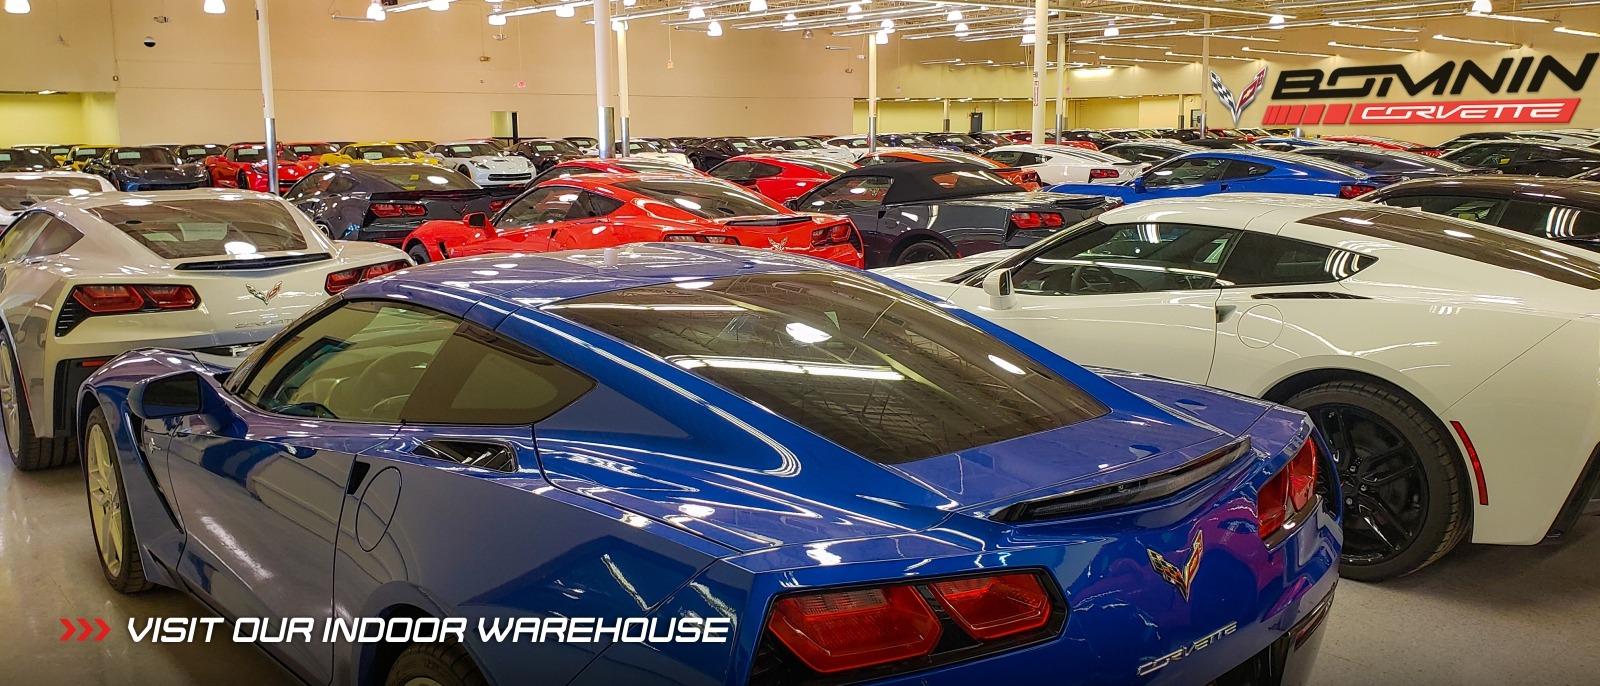 Bomnin Corvette Indoor Warehouse